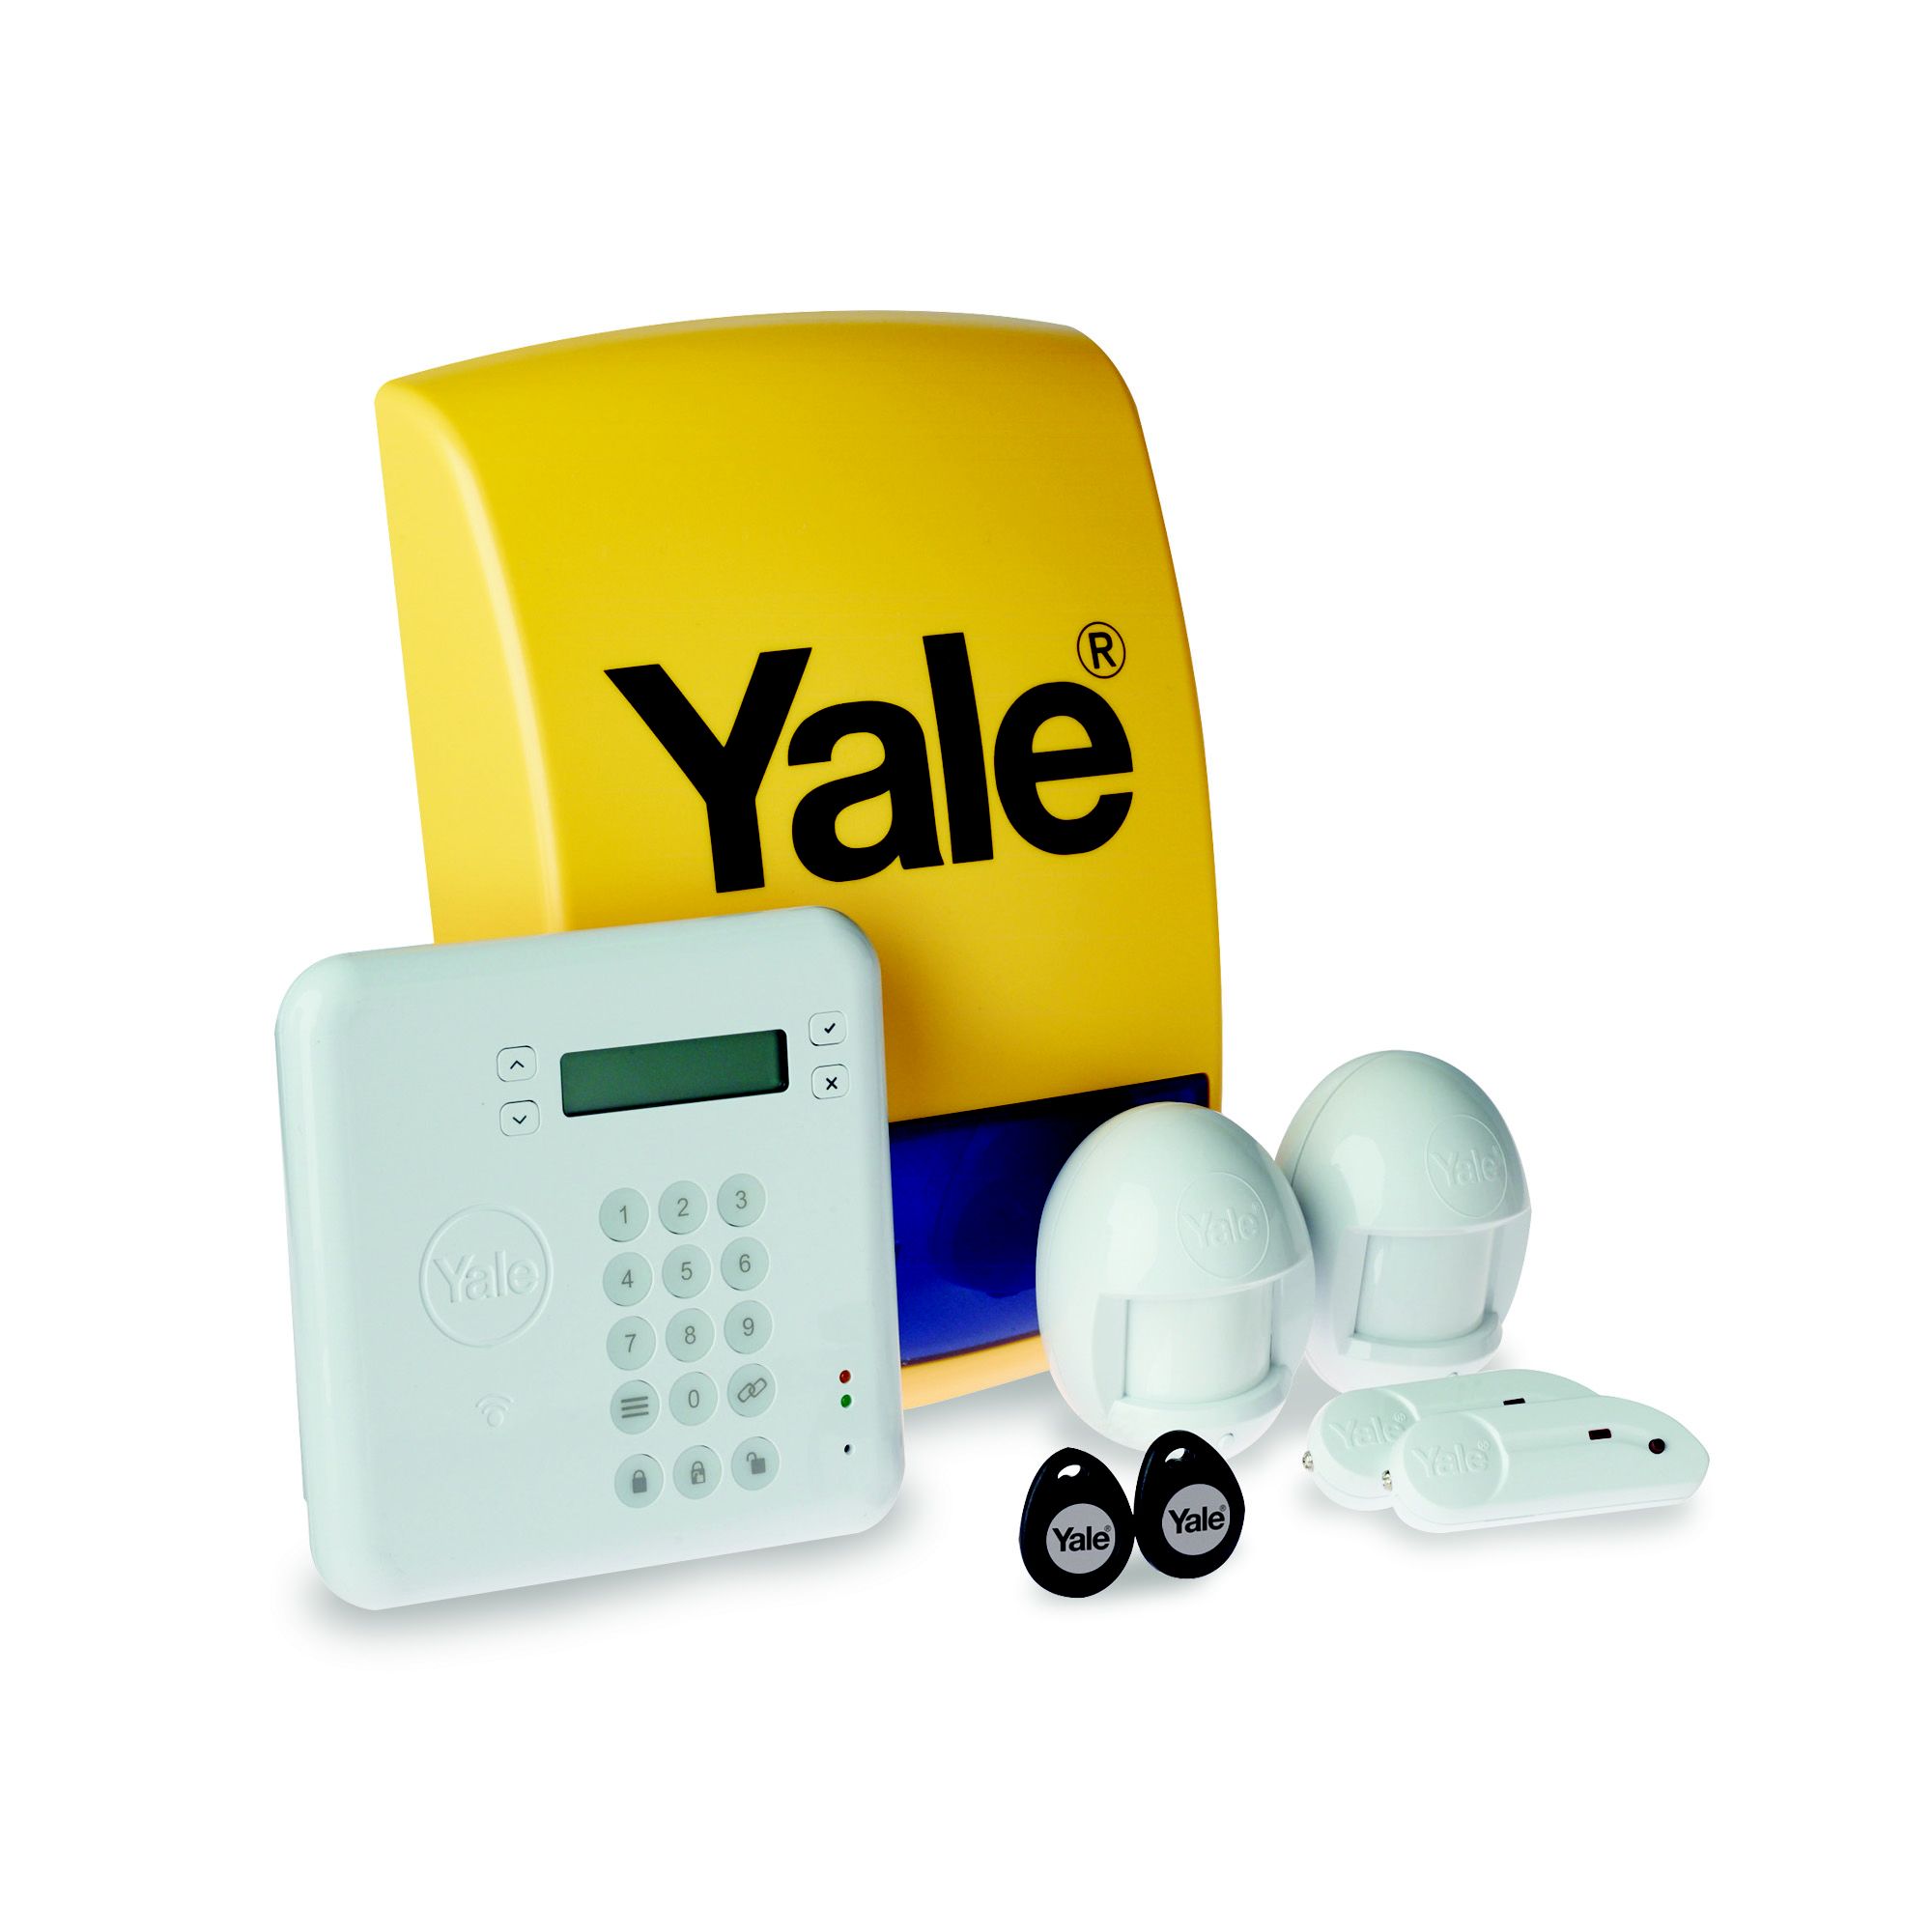 Yale Hsa Series Wireless Intruder Alarm Kit B Hsa6410 Diy At B Q